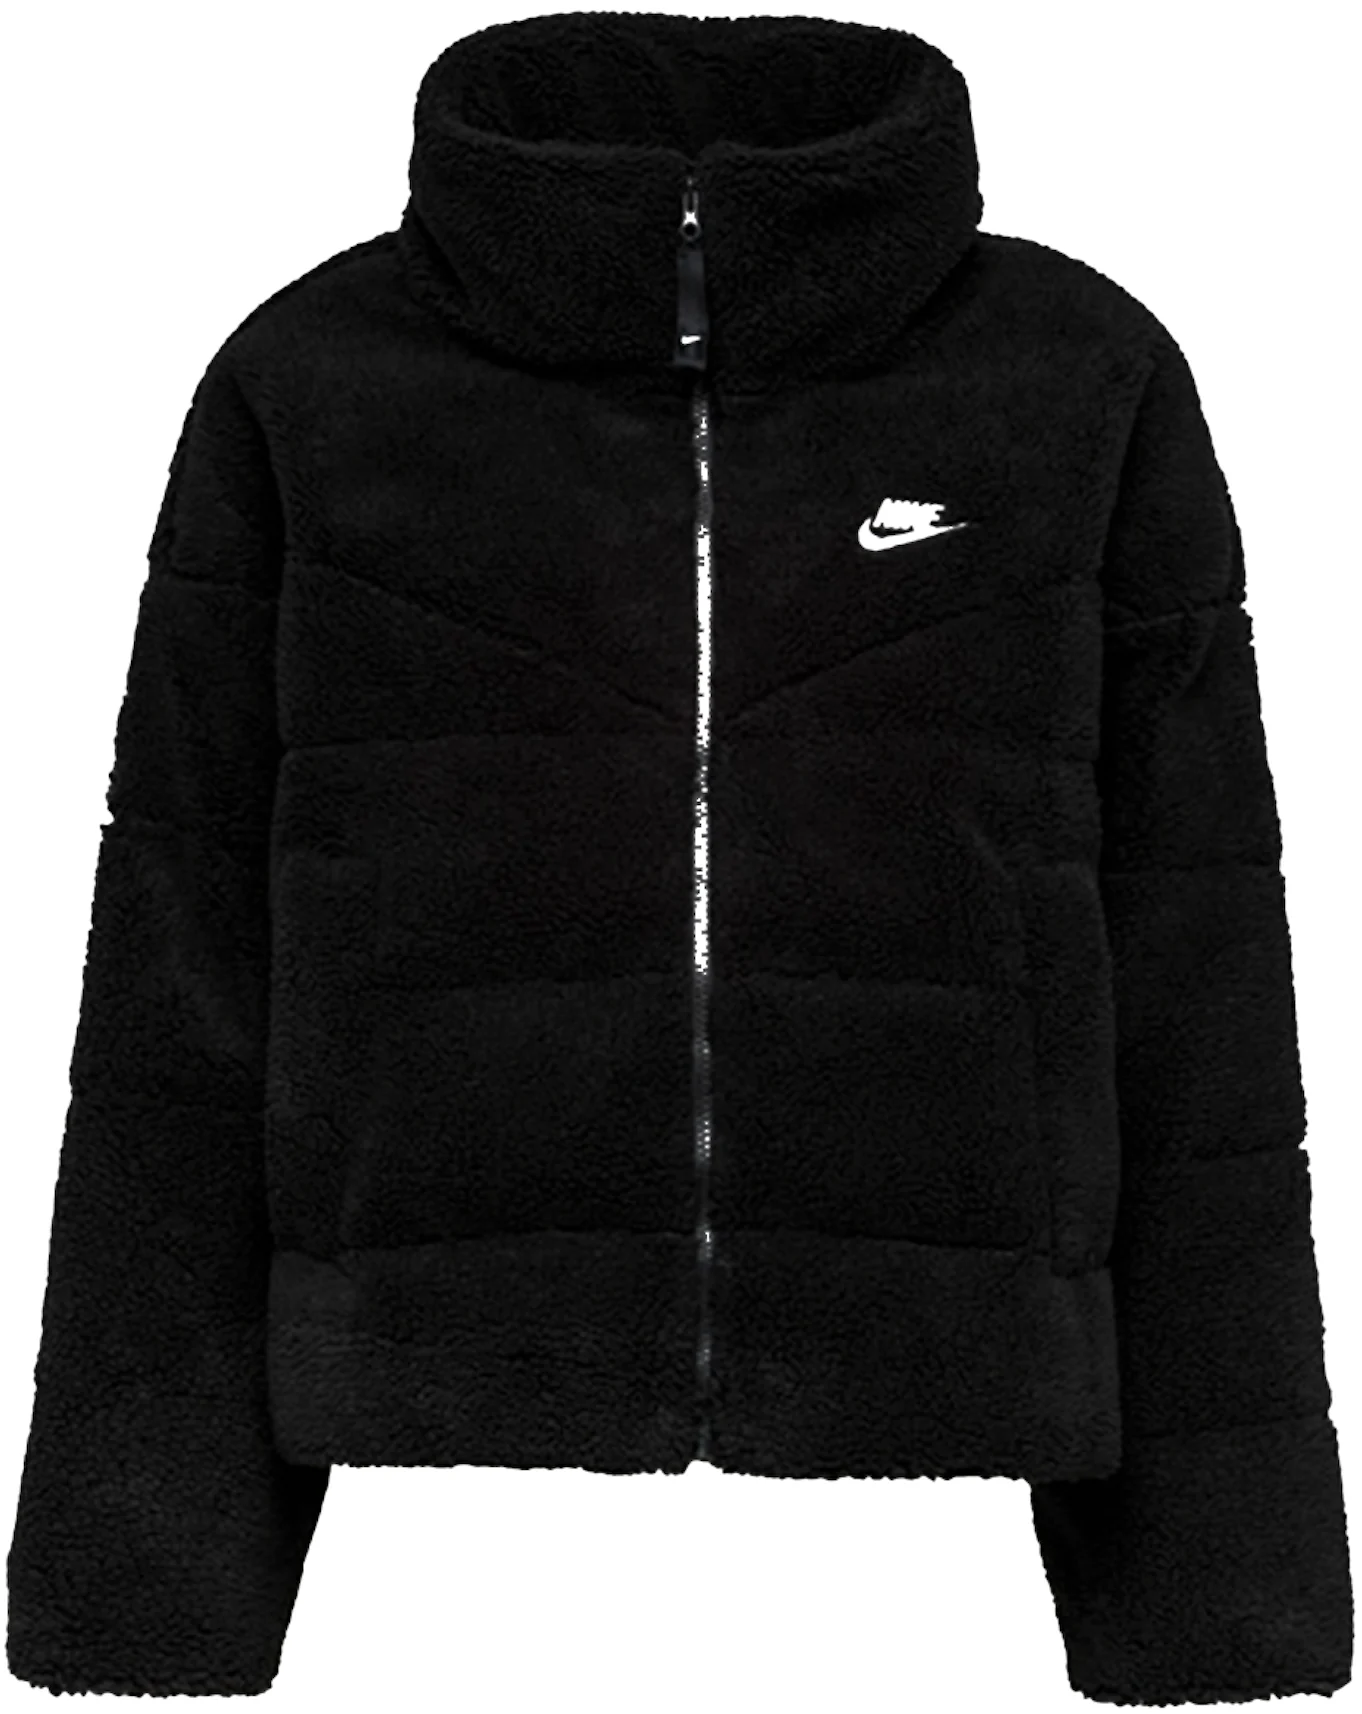 WMNS Jacket Nike Sportswear Down-Fill Jacket black